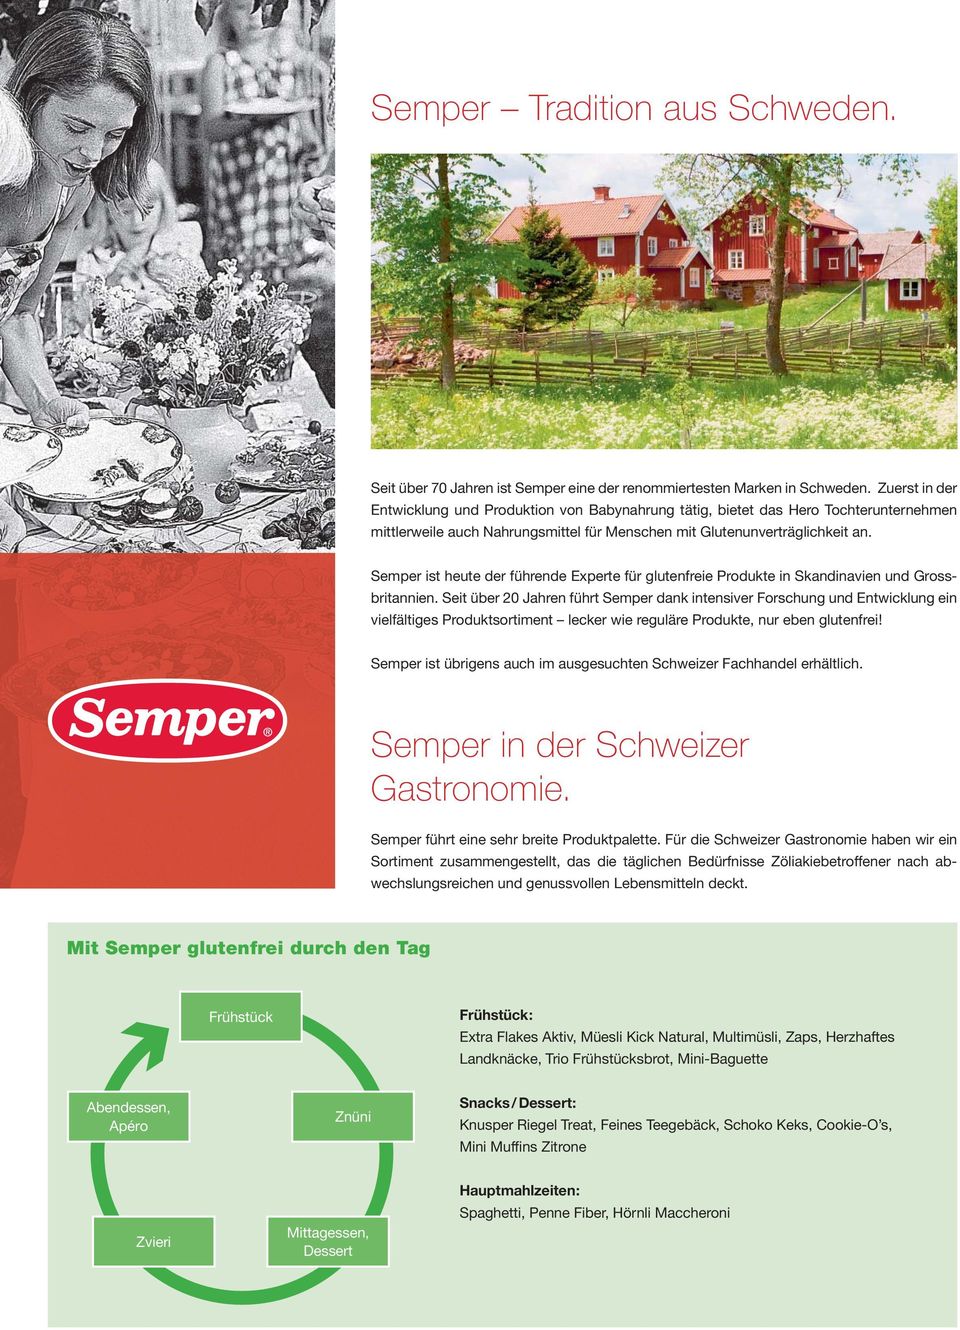 Semper ist heute der führende Experte für glutenfreie Produkte in Skandinavien und Grossbritannien.